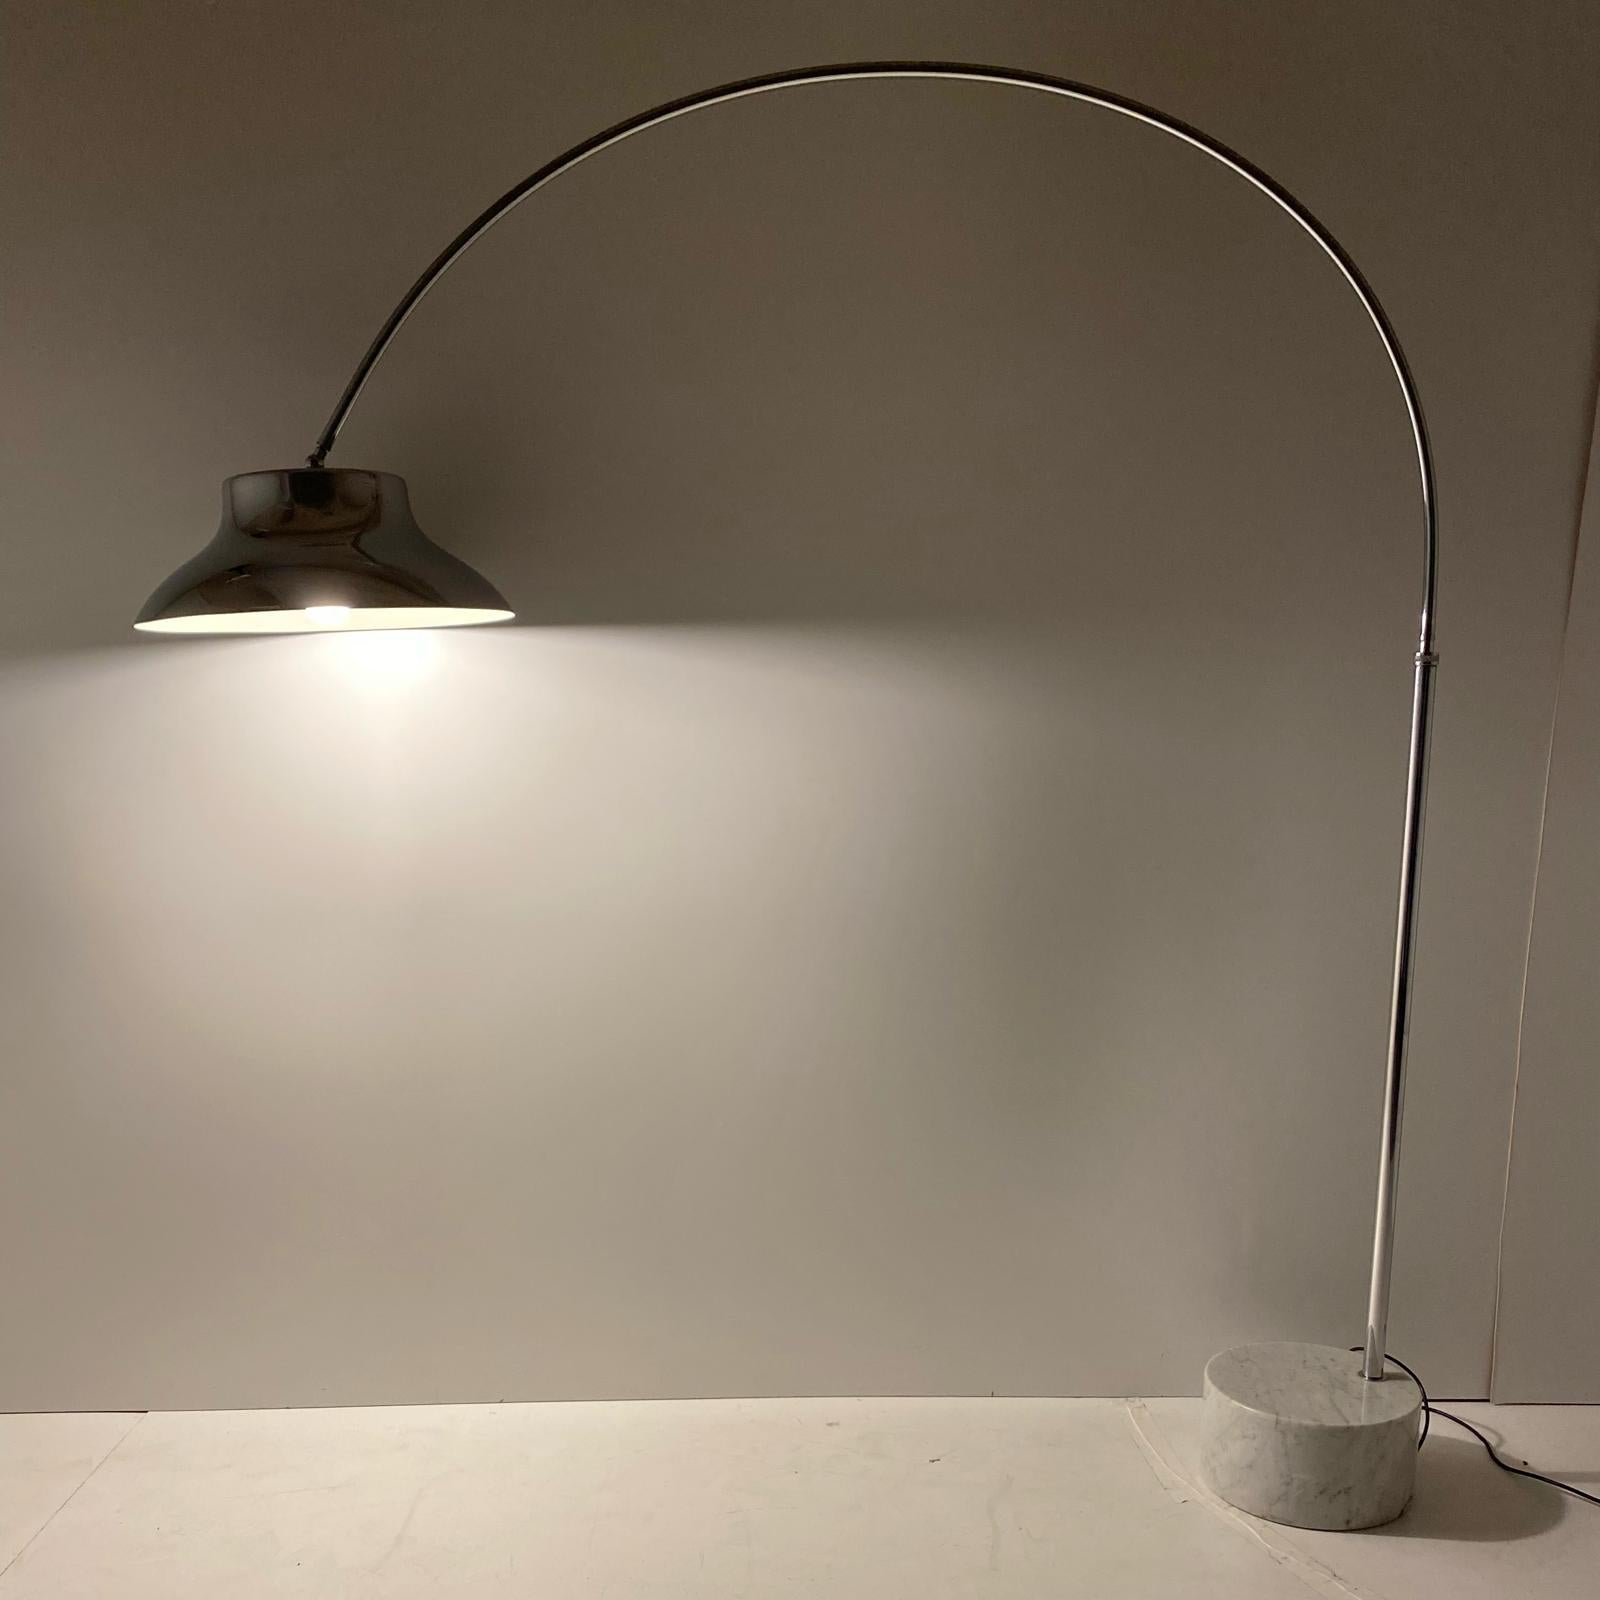 Xetra grande lampe à arc chromée vintage fabriquée en Italie dans les années 1960. Base en marbre de Carrare avec cadre et abat-jour chromés.

Perche flexible et réglable qui peut être déplacée d'avant en arrière. De même, la taille varie entre un